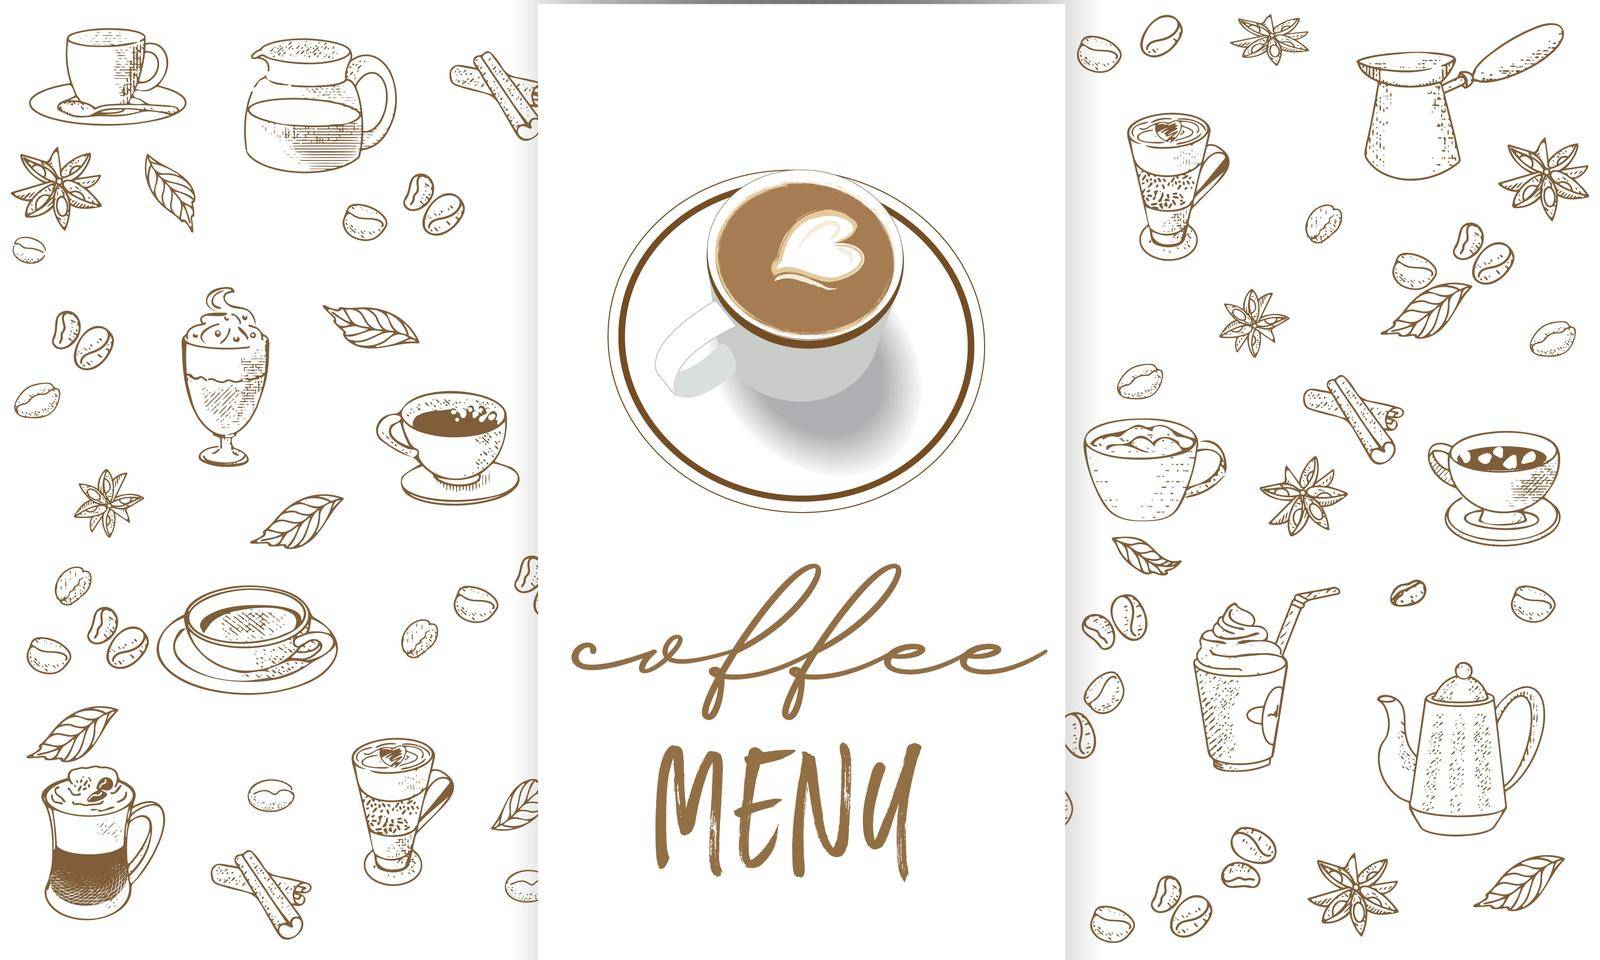 Coffee menu in sketchy style by GALA_art